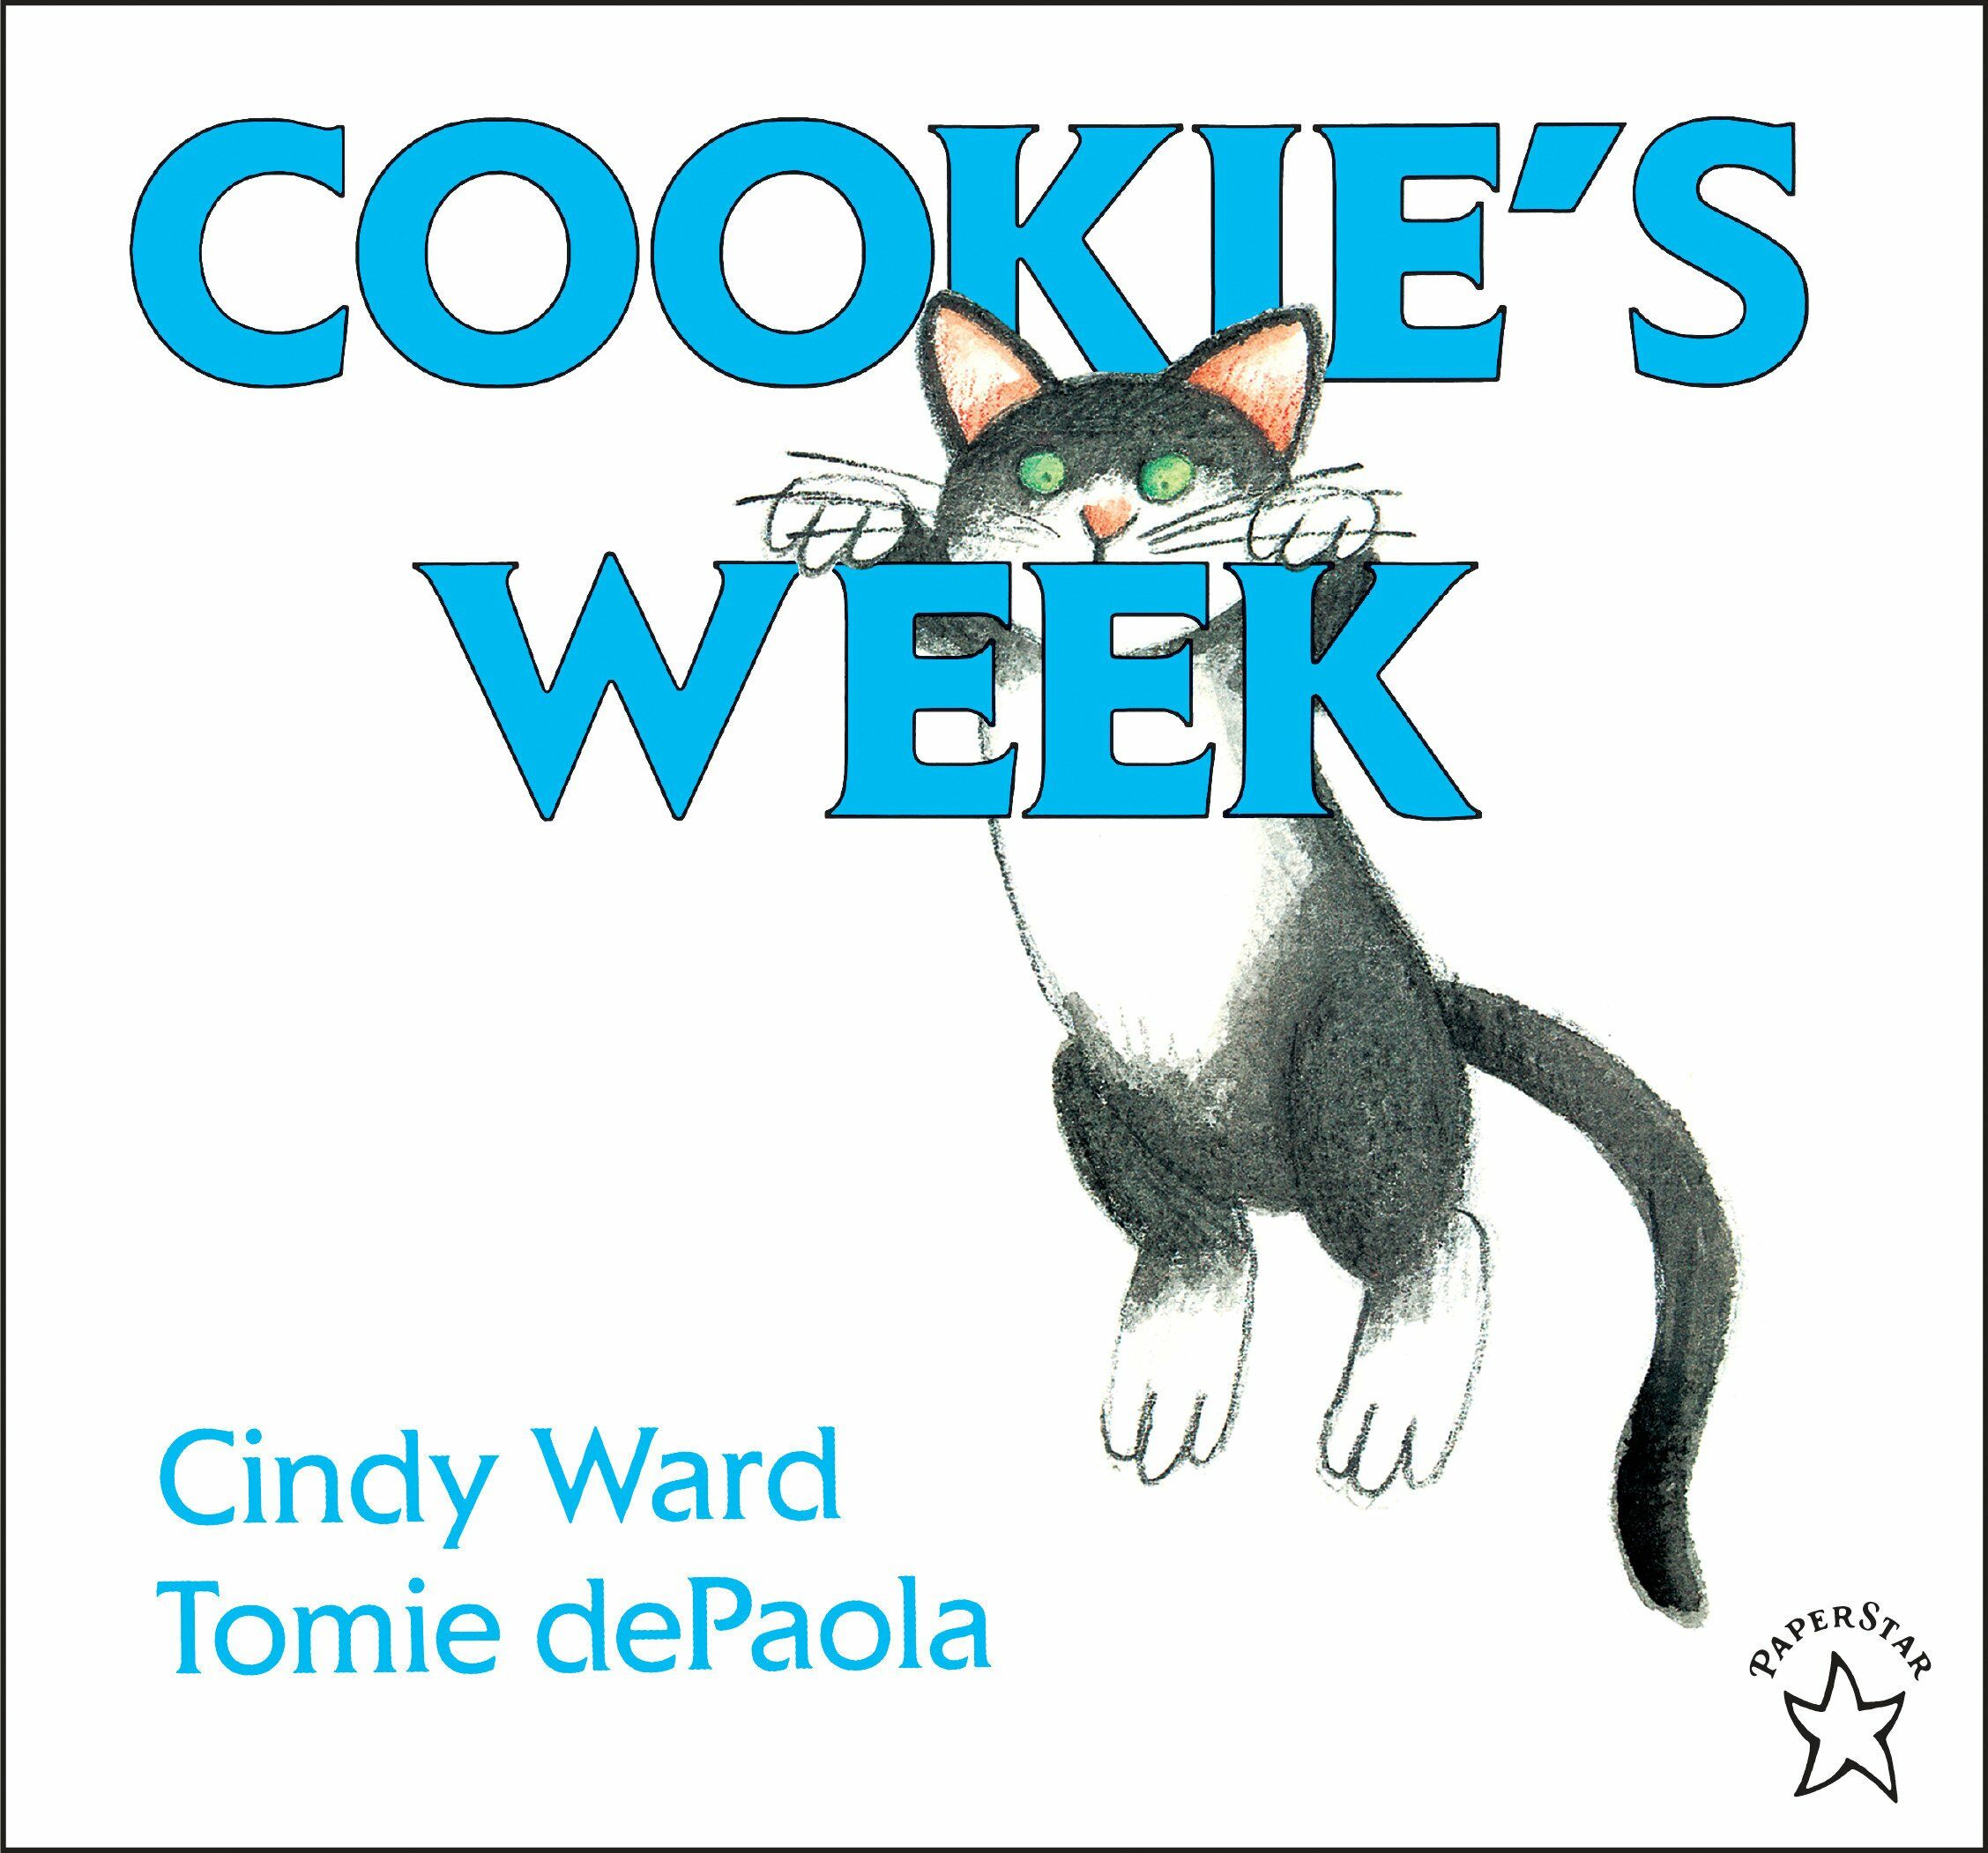 Cookies Week (Paperback)